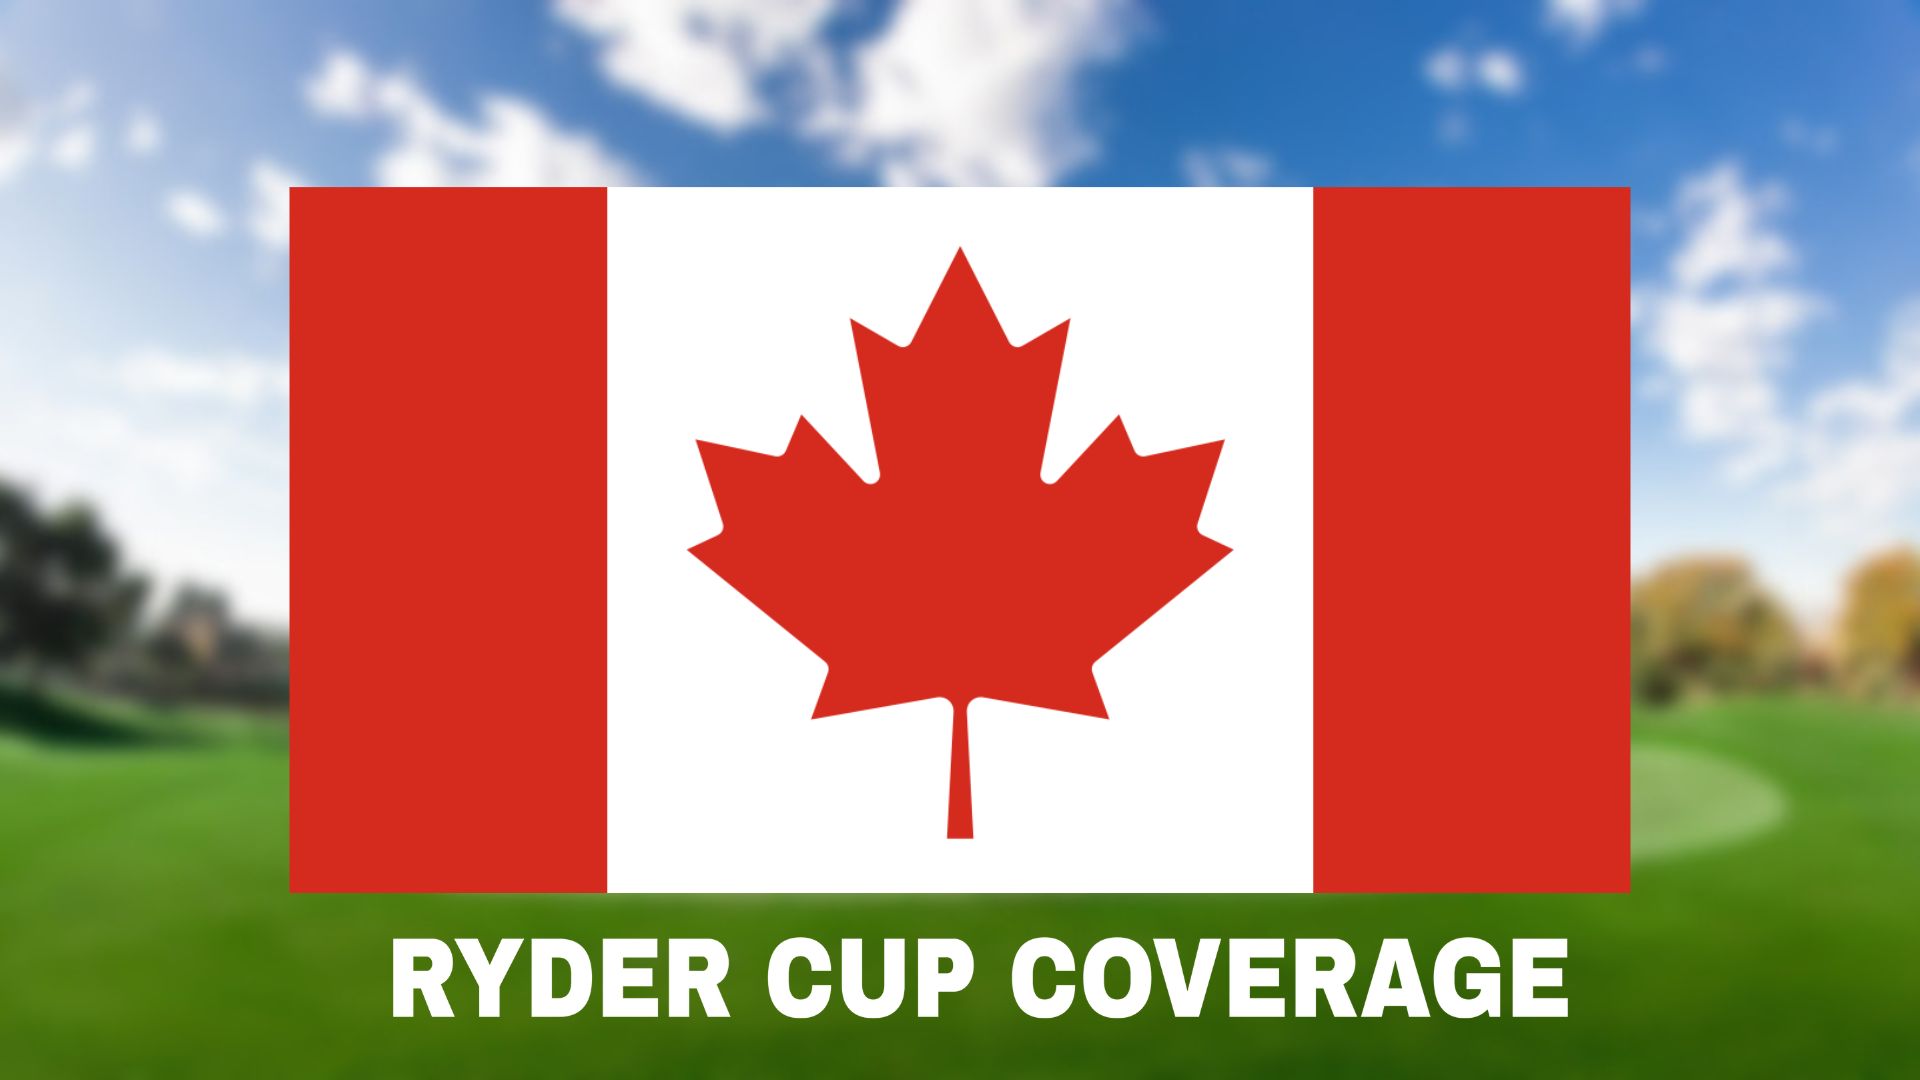 Ruder Cup Canada TV Schedule